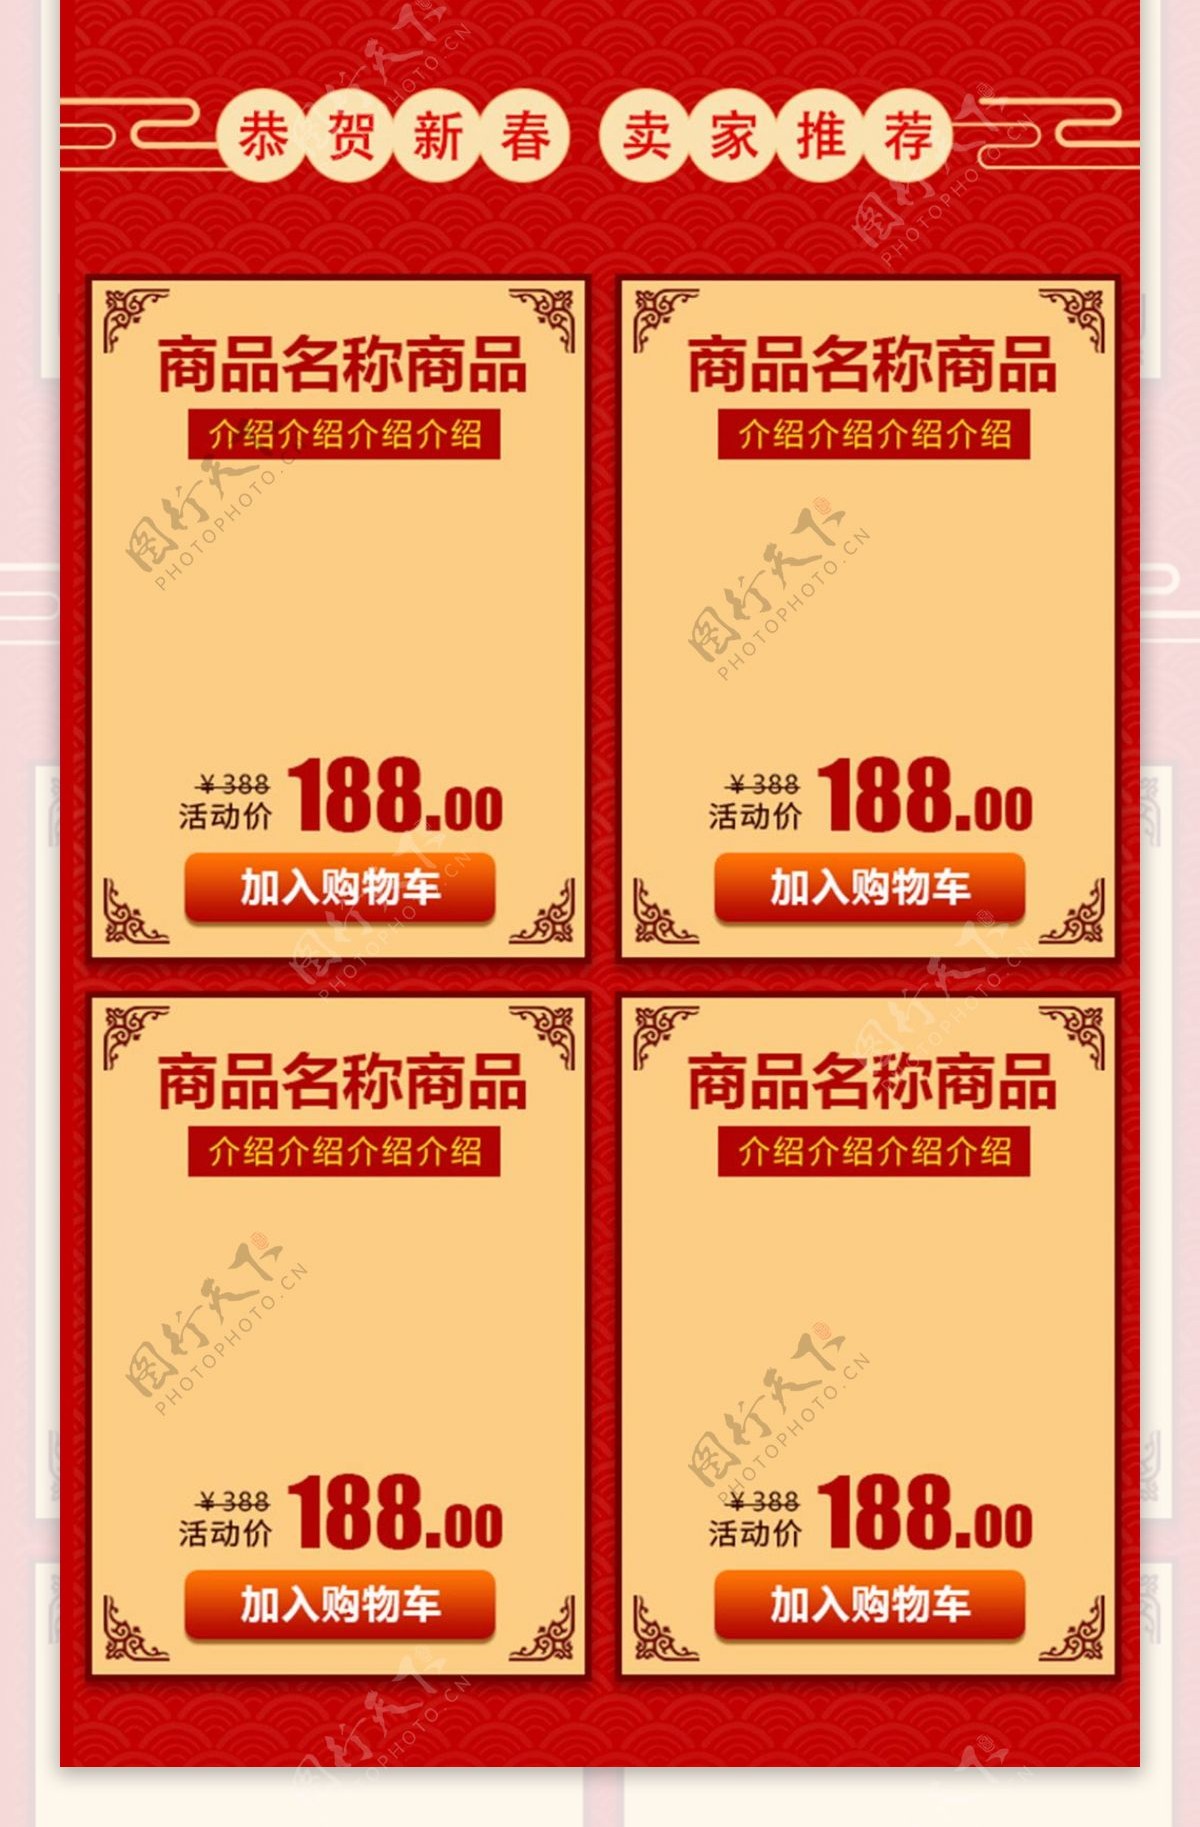 2018恭贺新春中国红喜庆移动首页模板